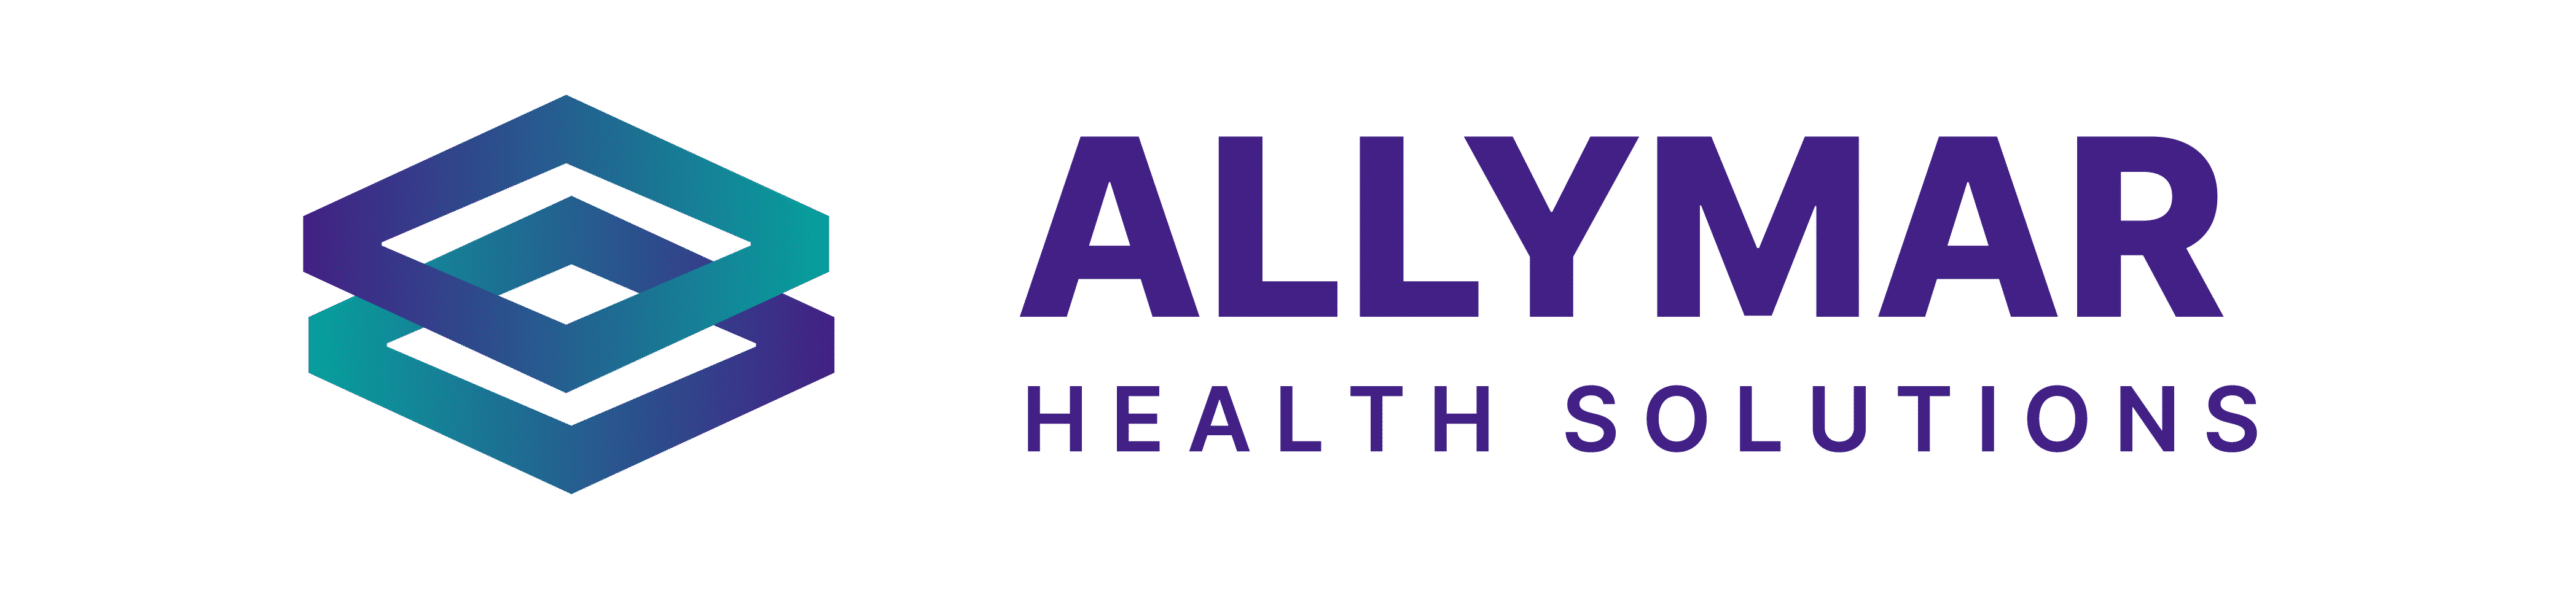 Allymar Health Solutions